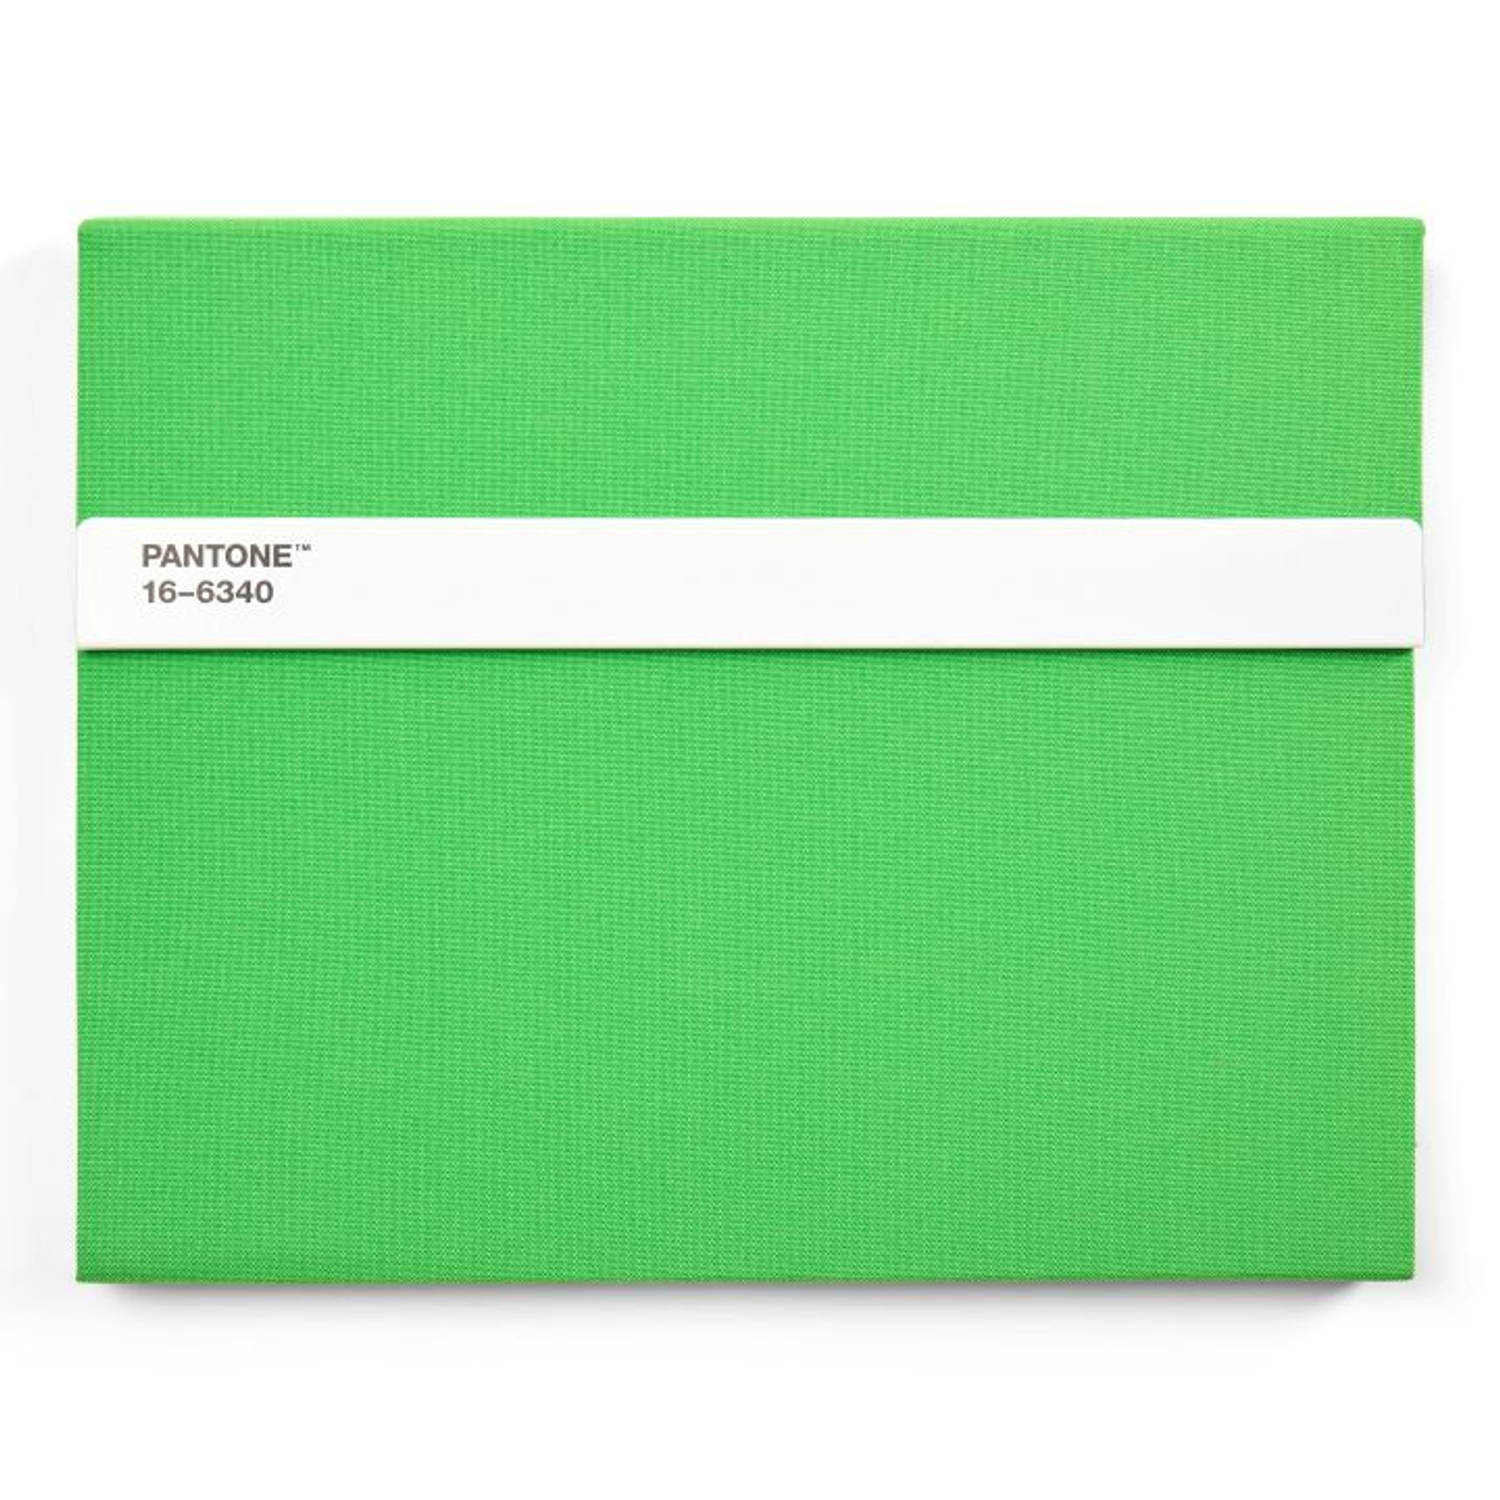 Copenhagen Design - Notebook with Pen